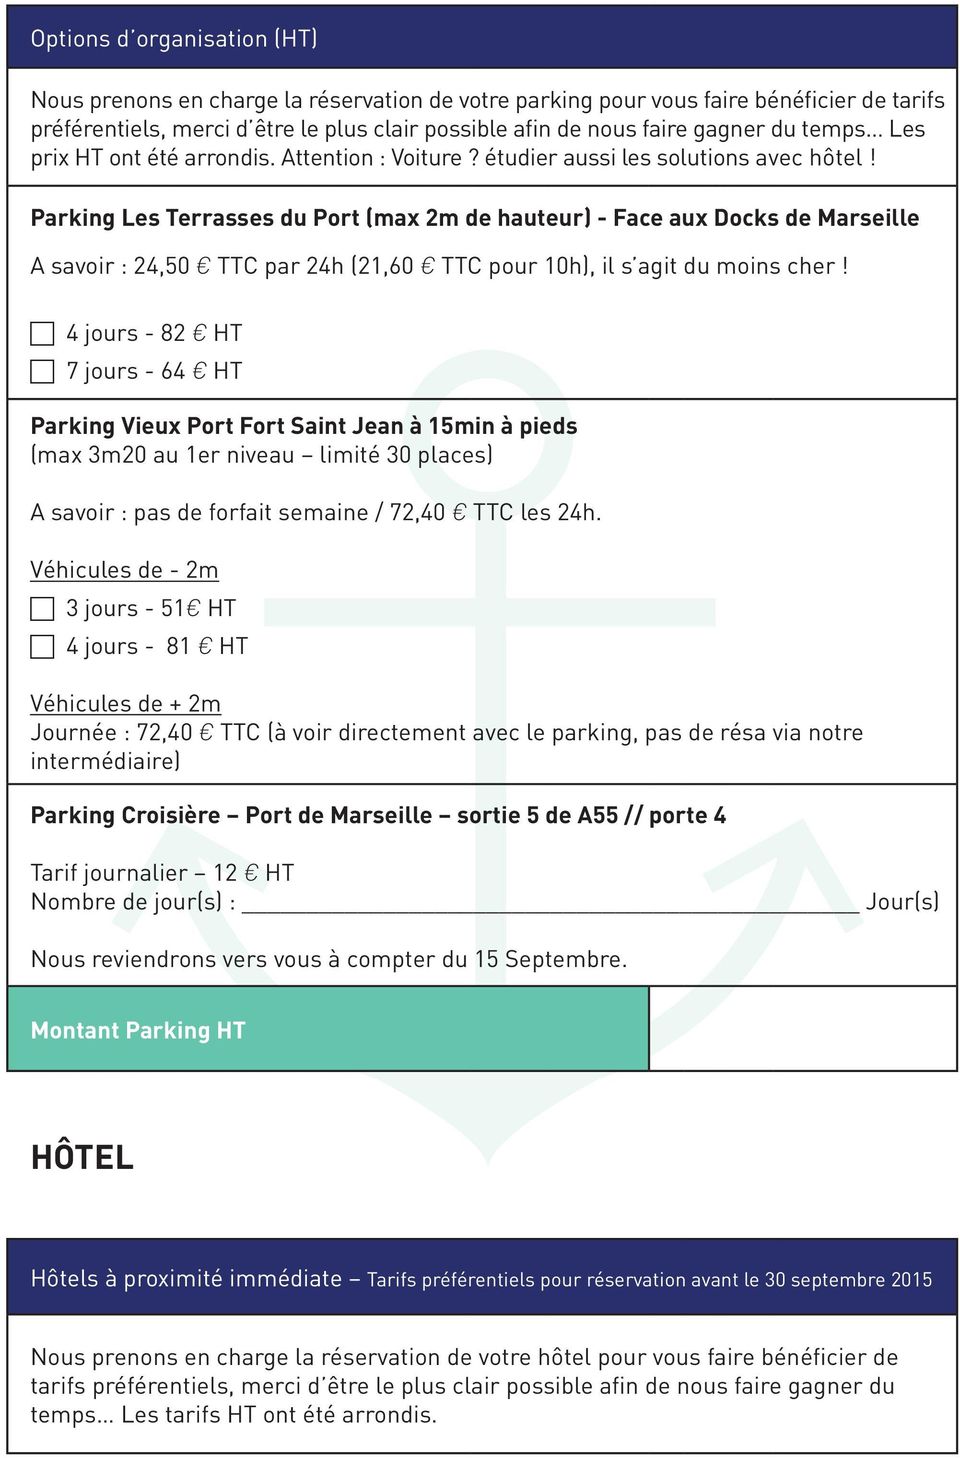 Parking Les Terrasses du Port (max 2m de hauteur) - Face aux Docks de Marseille A savoir : 24,50 E TTC par 24h (21,60 E TTC pour 10h), il s agit du moins cher!